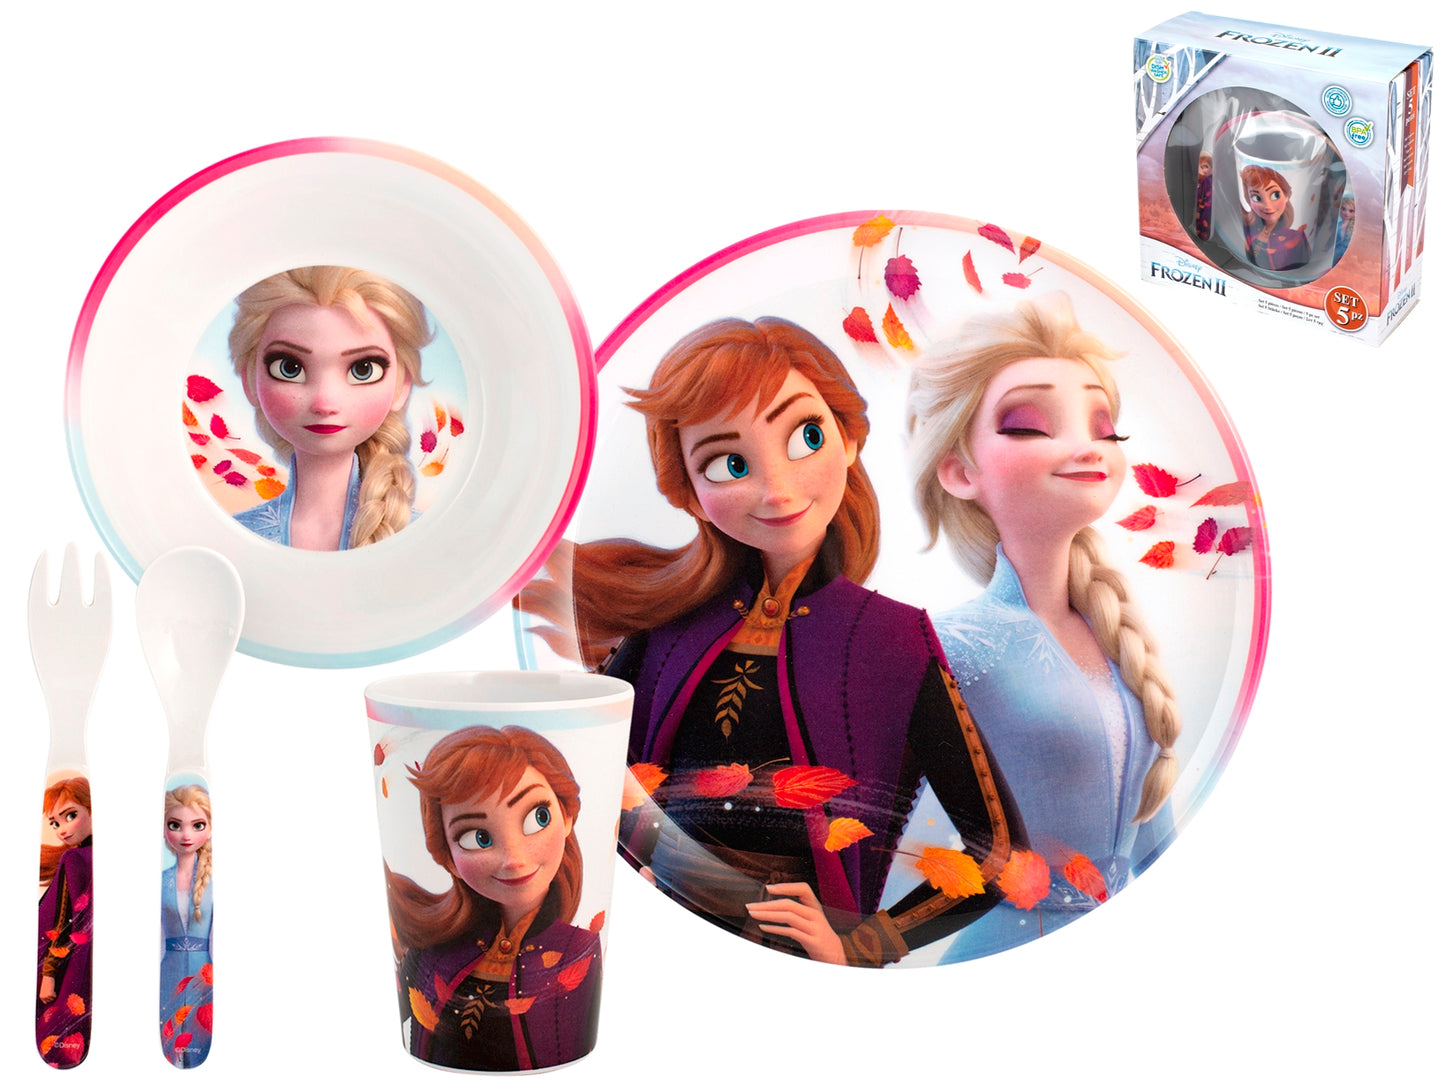 Confezione 5 pezzi Disney Frozen2 in melamina decorata assortita. COLLO DA 6 PEZZI